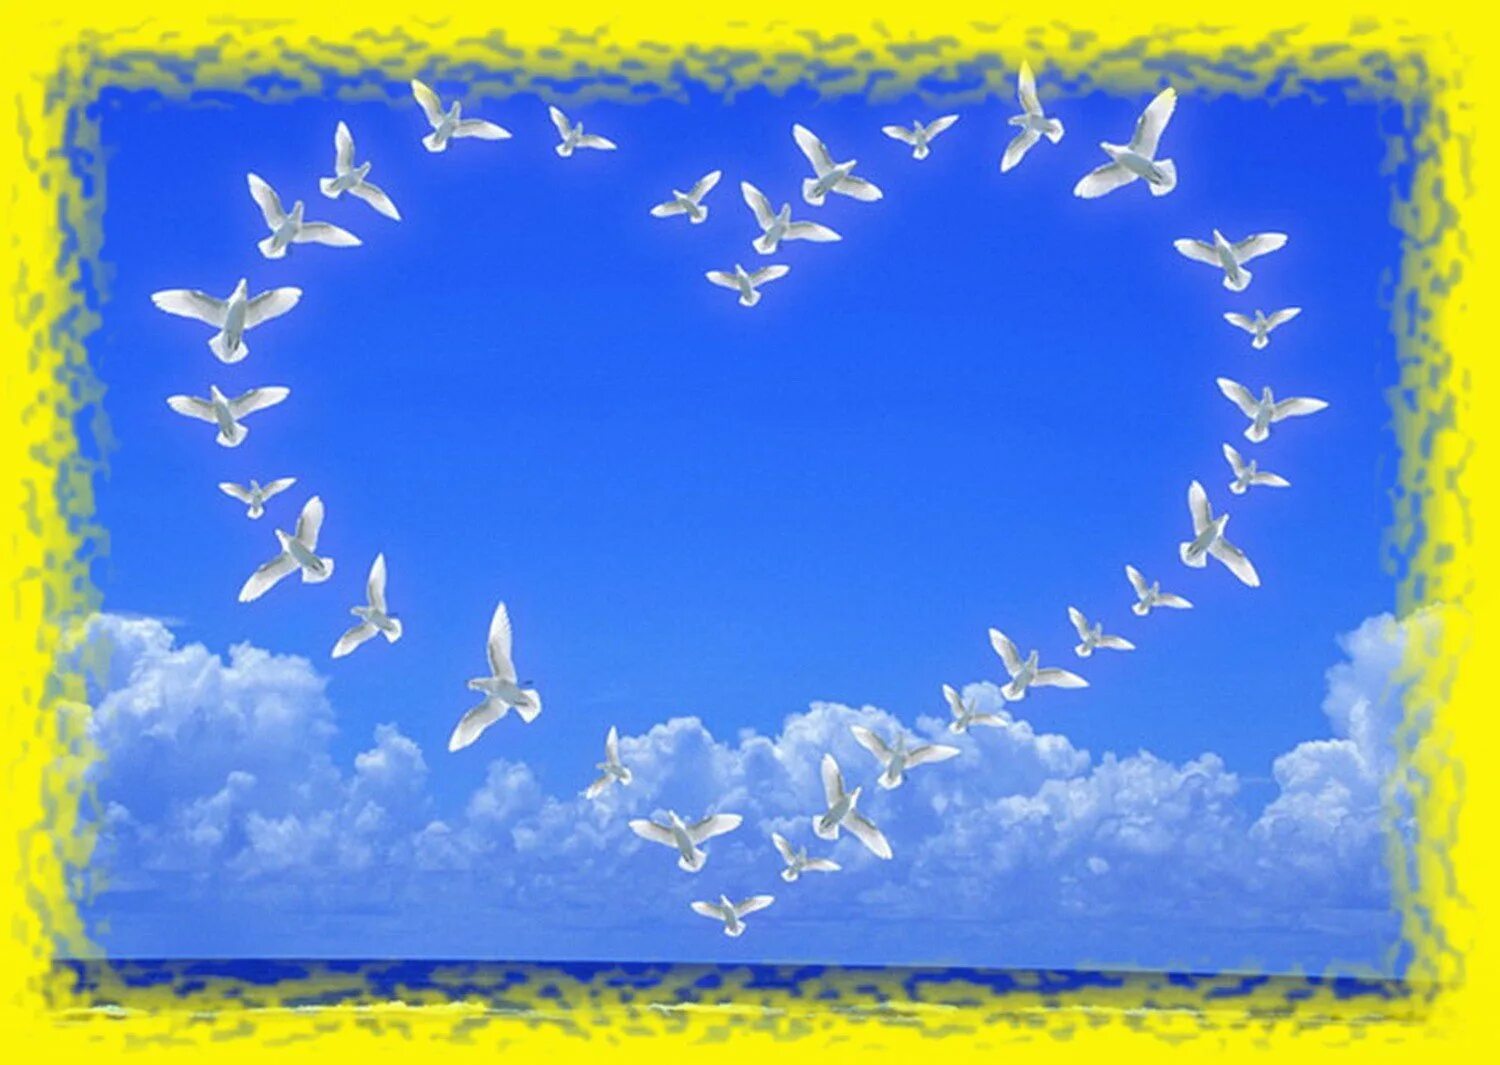 Мирного неба над головой с днем рождения. Голубое мирное небо. Голуби в небе. Открытка мирного неба. Небо голуби мир любовь.